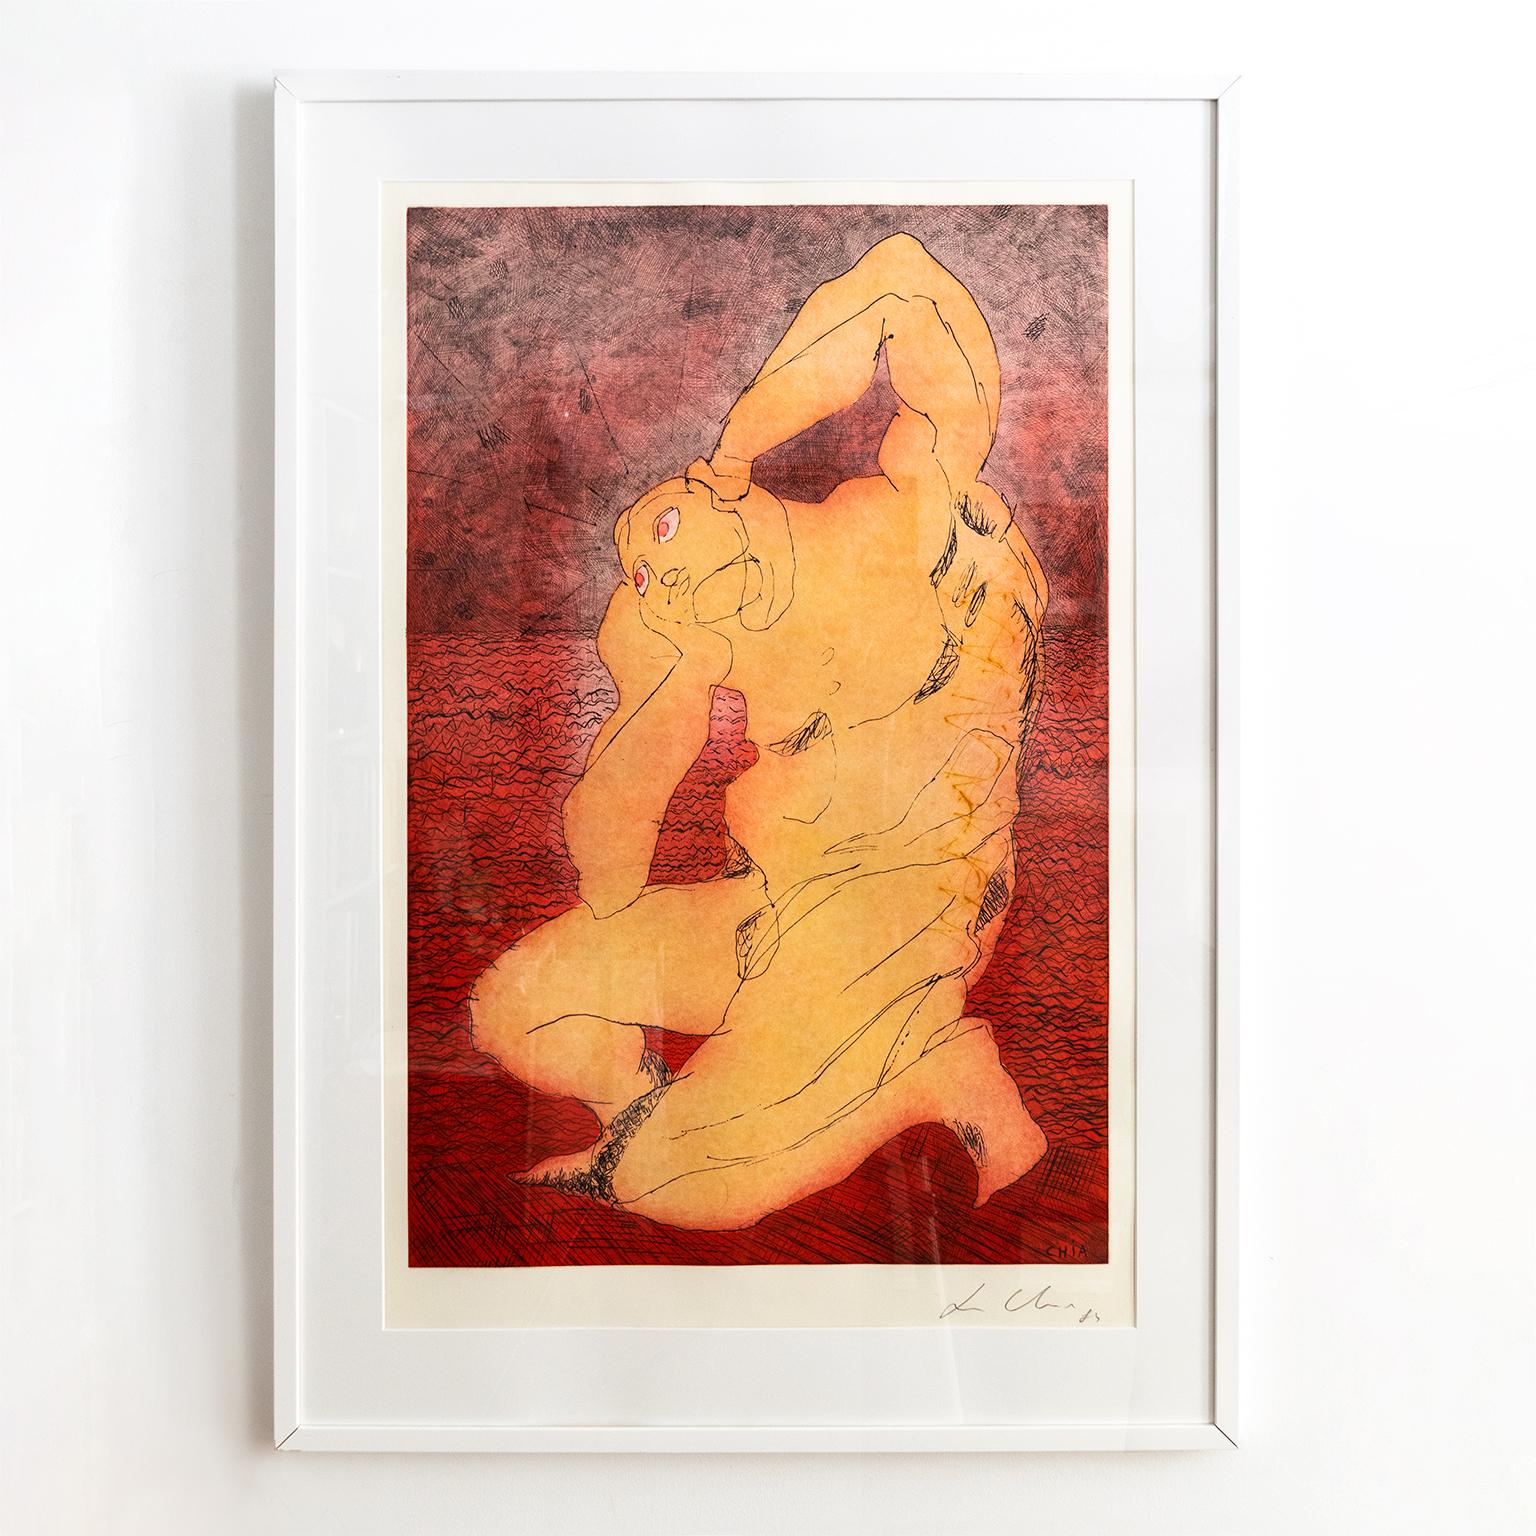 Maître post-moderne Sandro Chia : aquatinte avec gravure d'une figure masculine nue en rouge et jaune rougeâtre. Cette pièce est intitulée 